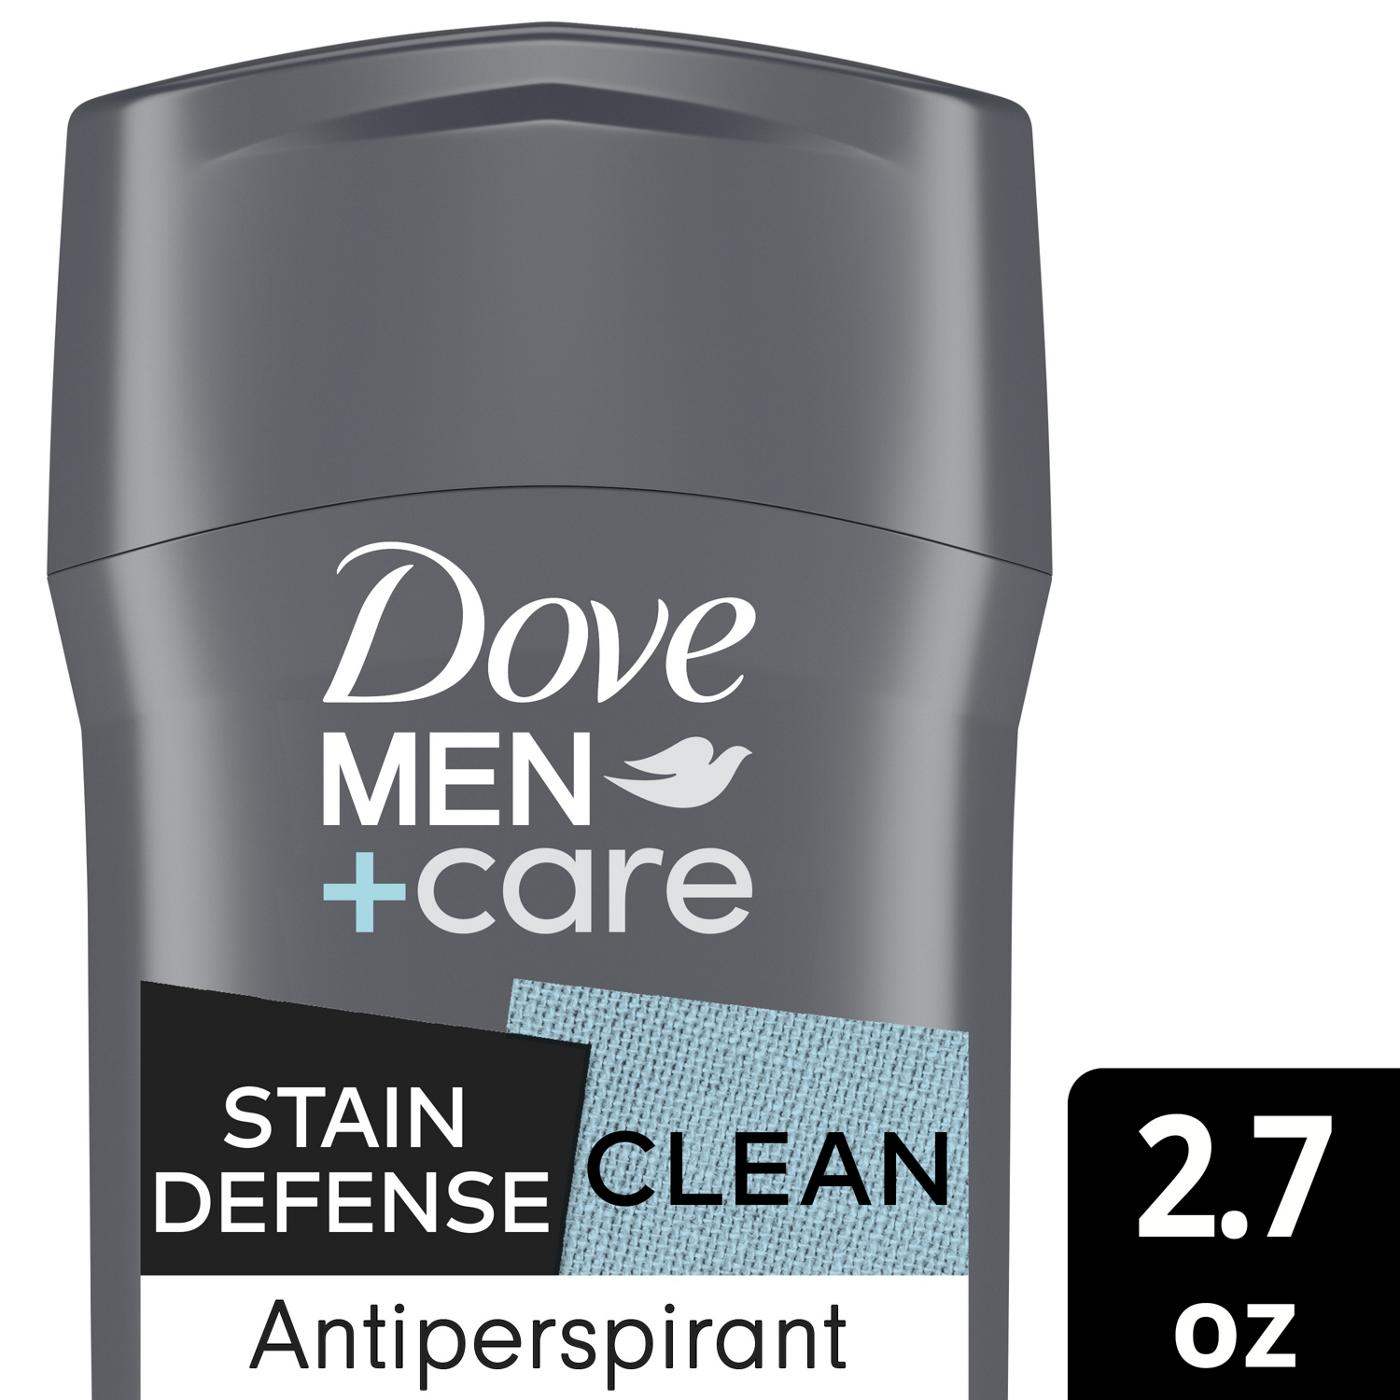 Dove Men+Care Antiperspirant Deodorant Stain Defense Clean; image 2 of 7